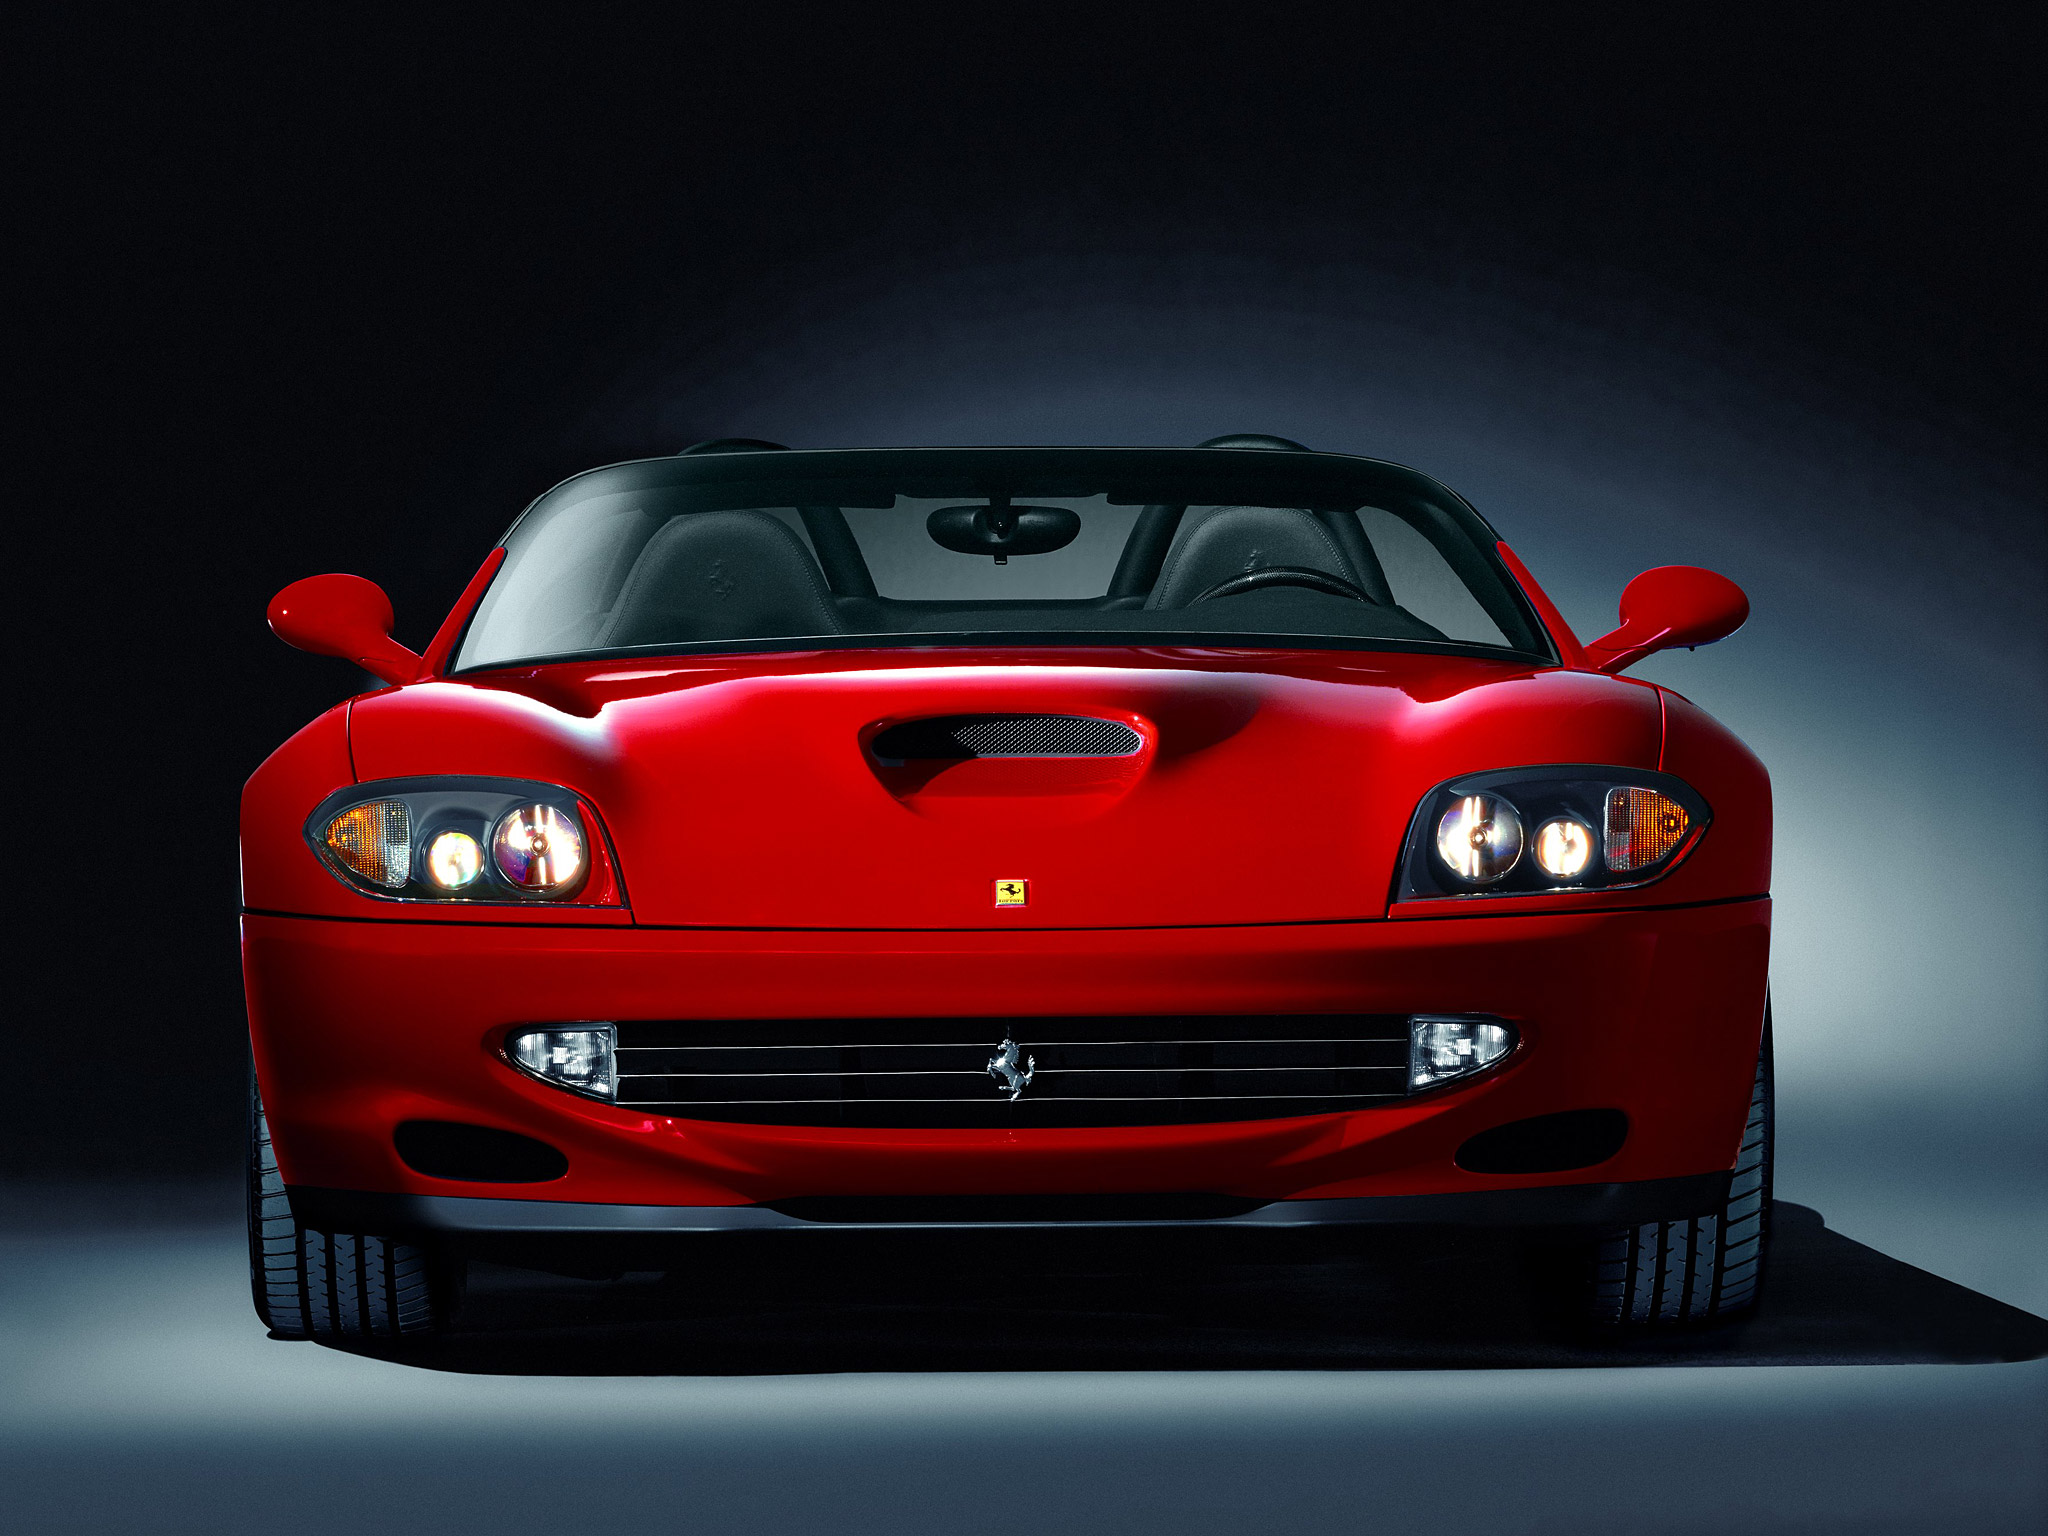  2001 Ferrari 550 Barchetta Wallpaper.